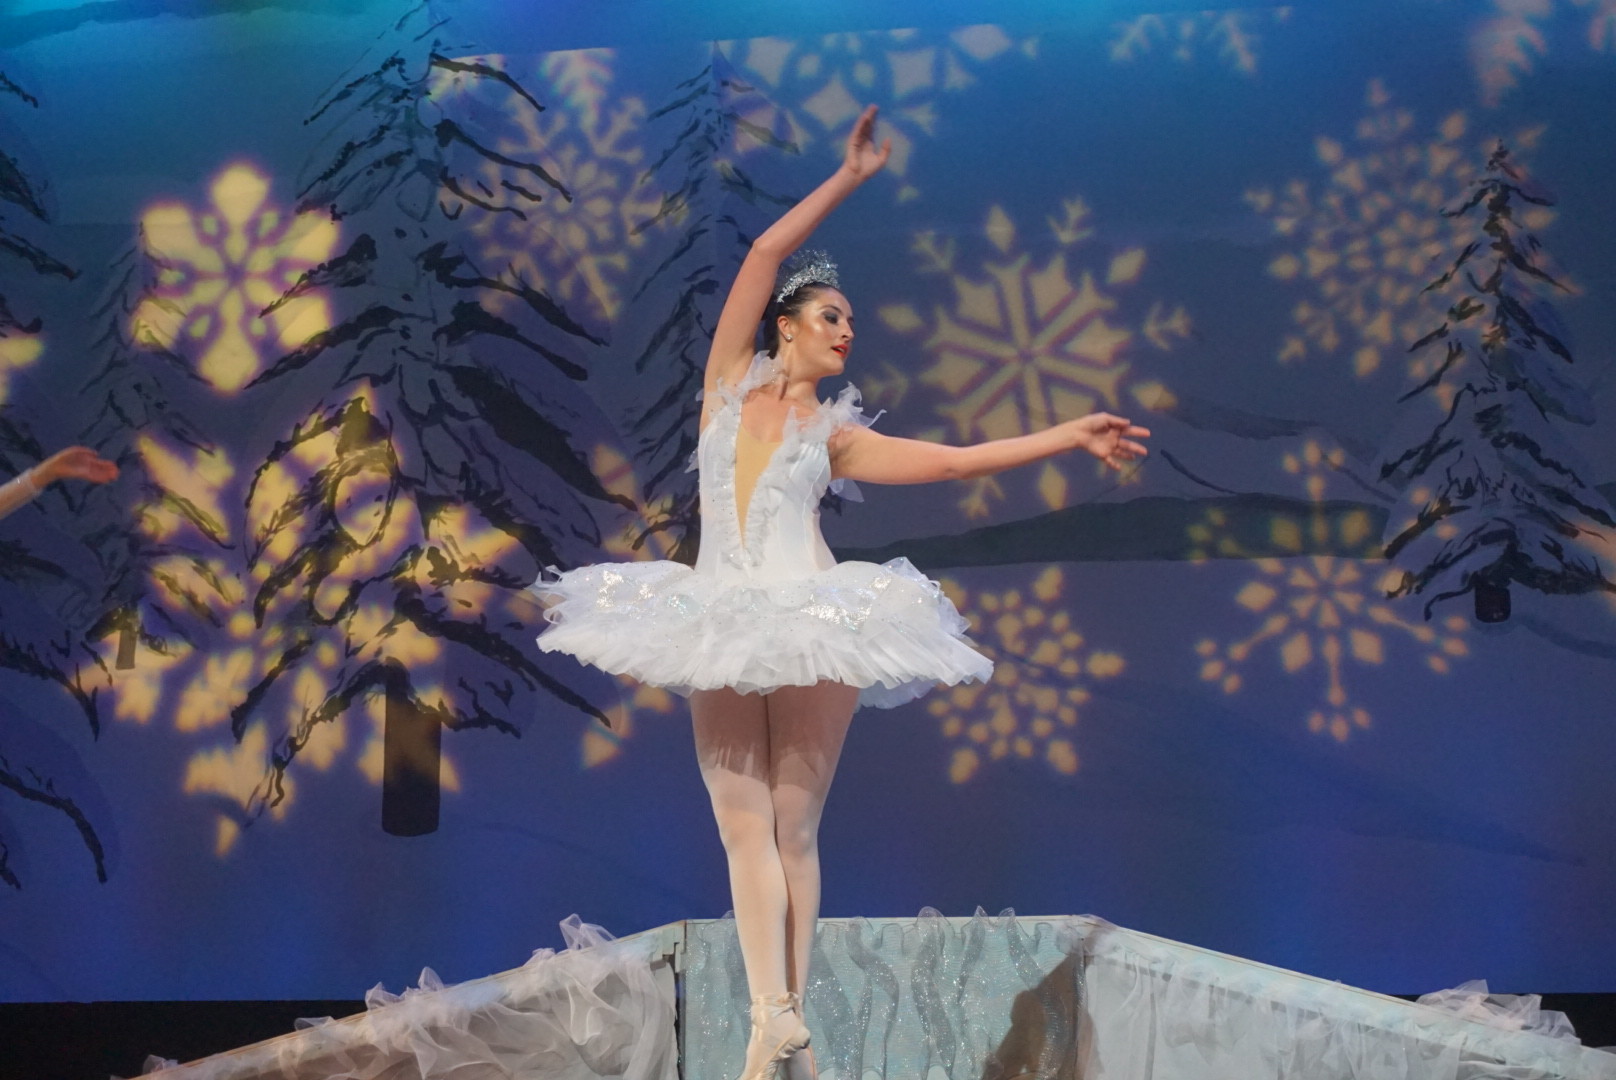 Ally Davis dances as the Snow Queen